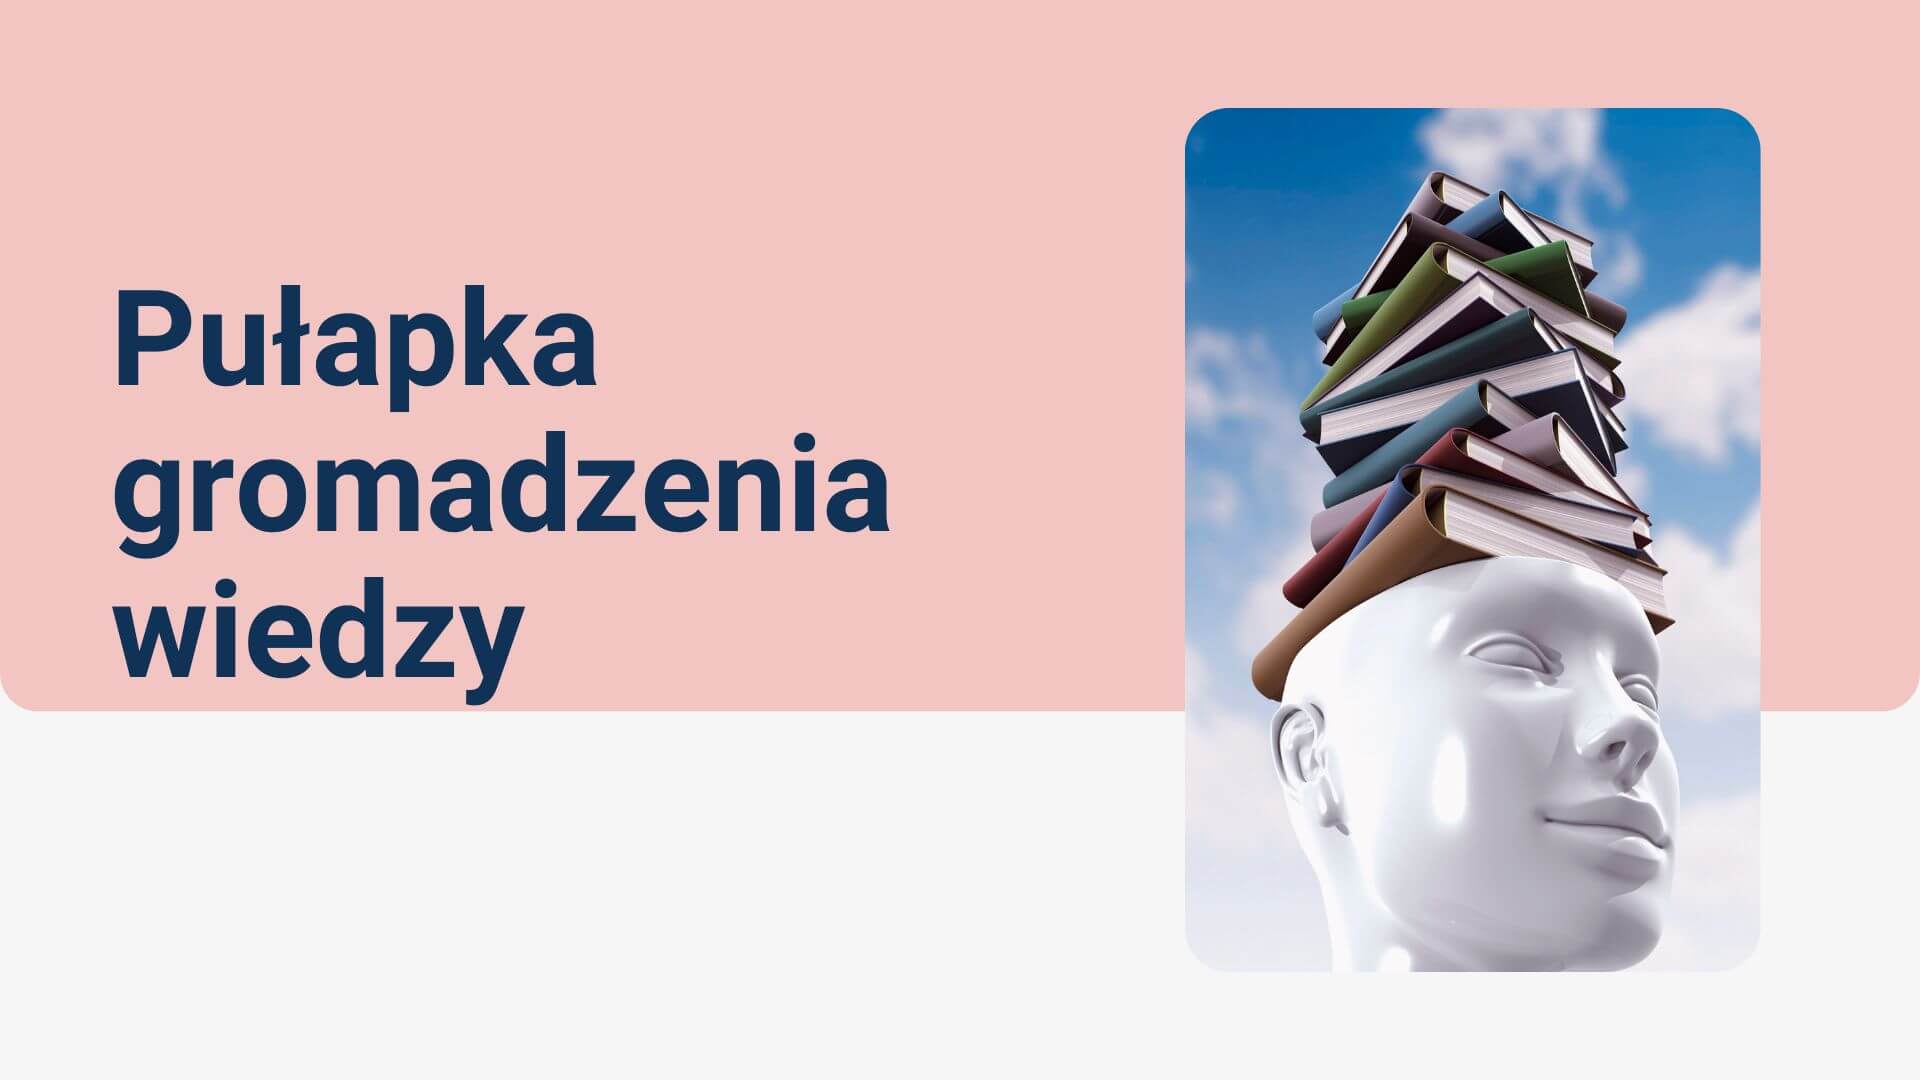 You are currently viewing Pułapka gromadzenia wiedzy